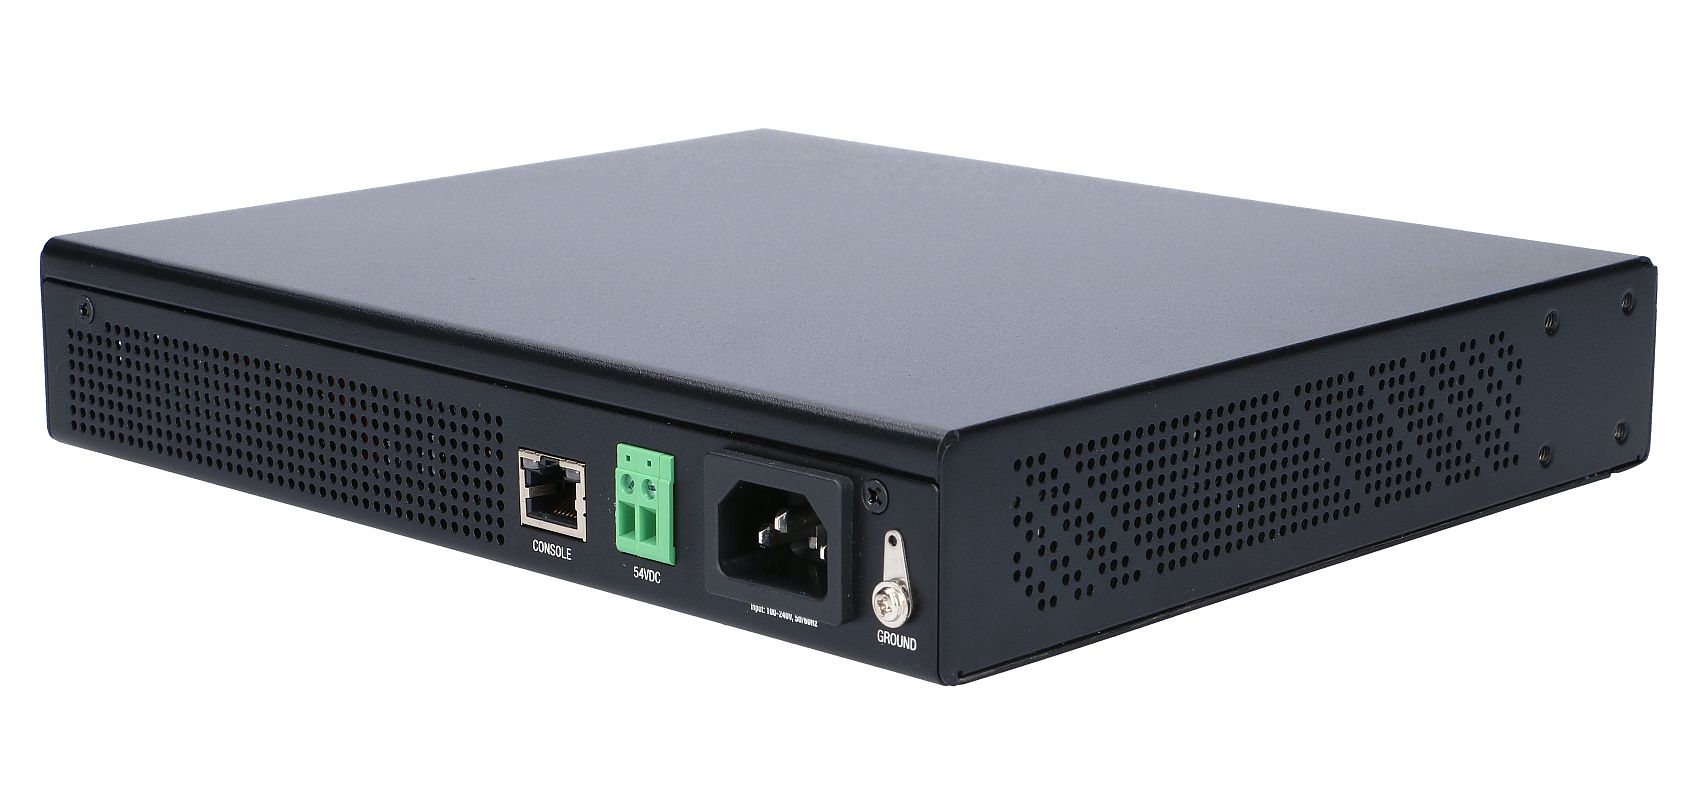 Ubiquiti Networks EdgeSwitch, 8-Port, 150W EdgeSwitch 8, Managed,  810354025686 tīkla iekārta